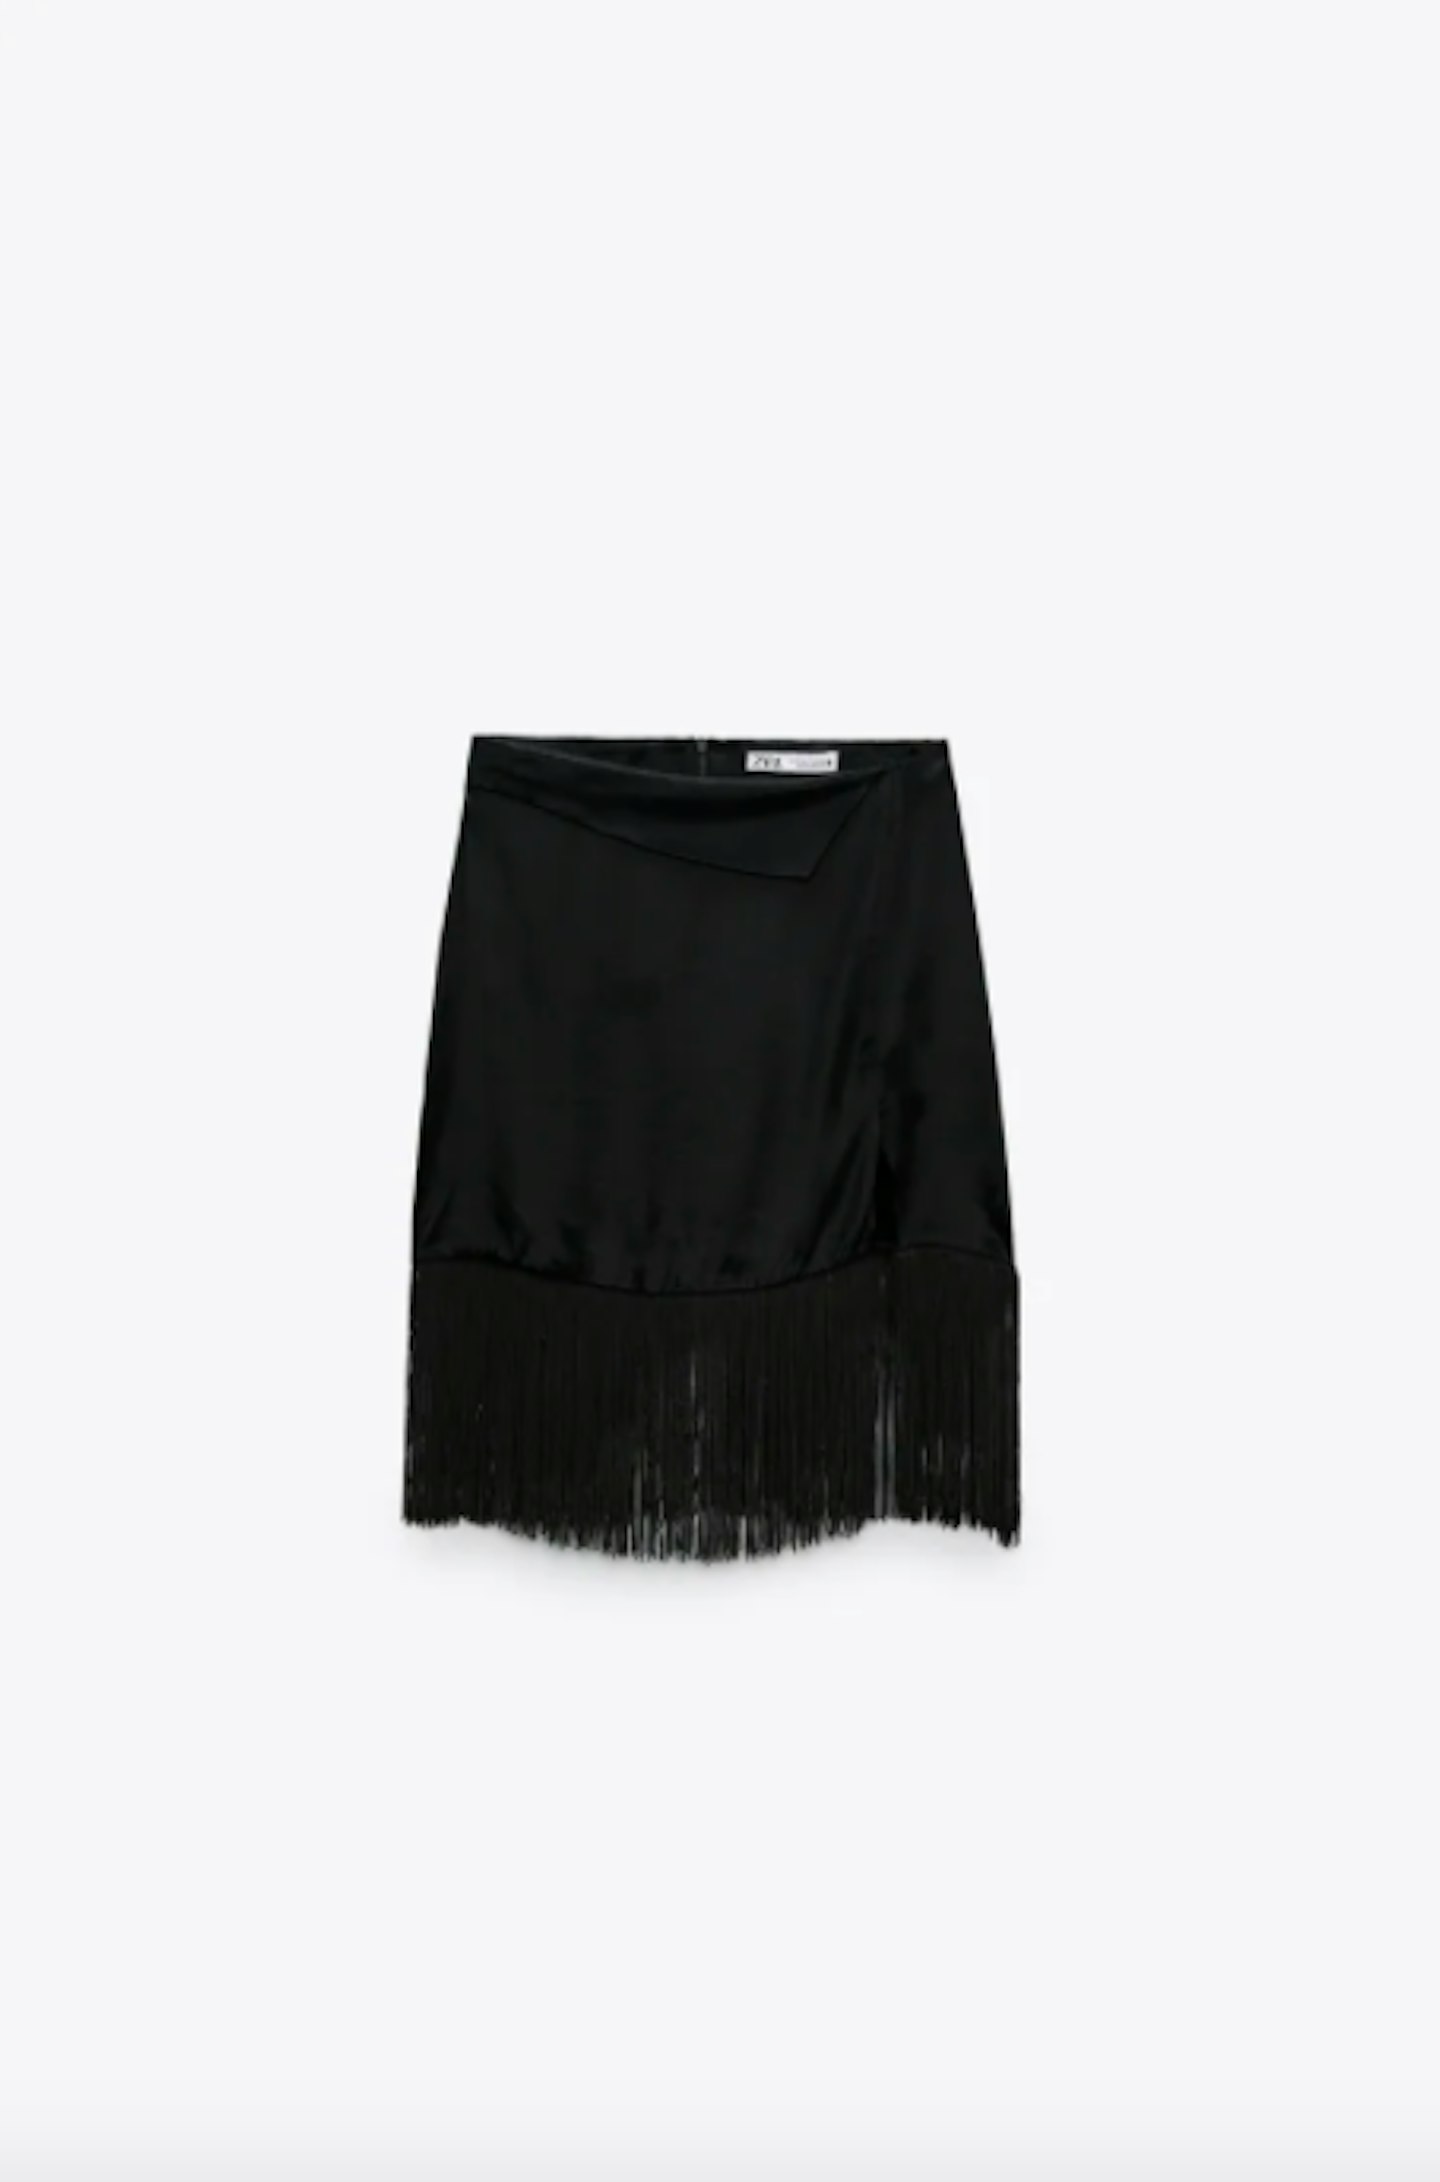 Fringed Satin Skirt, £29.99